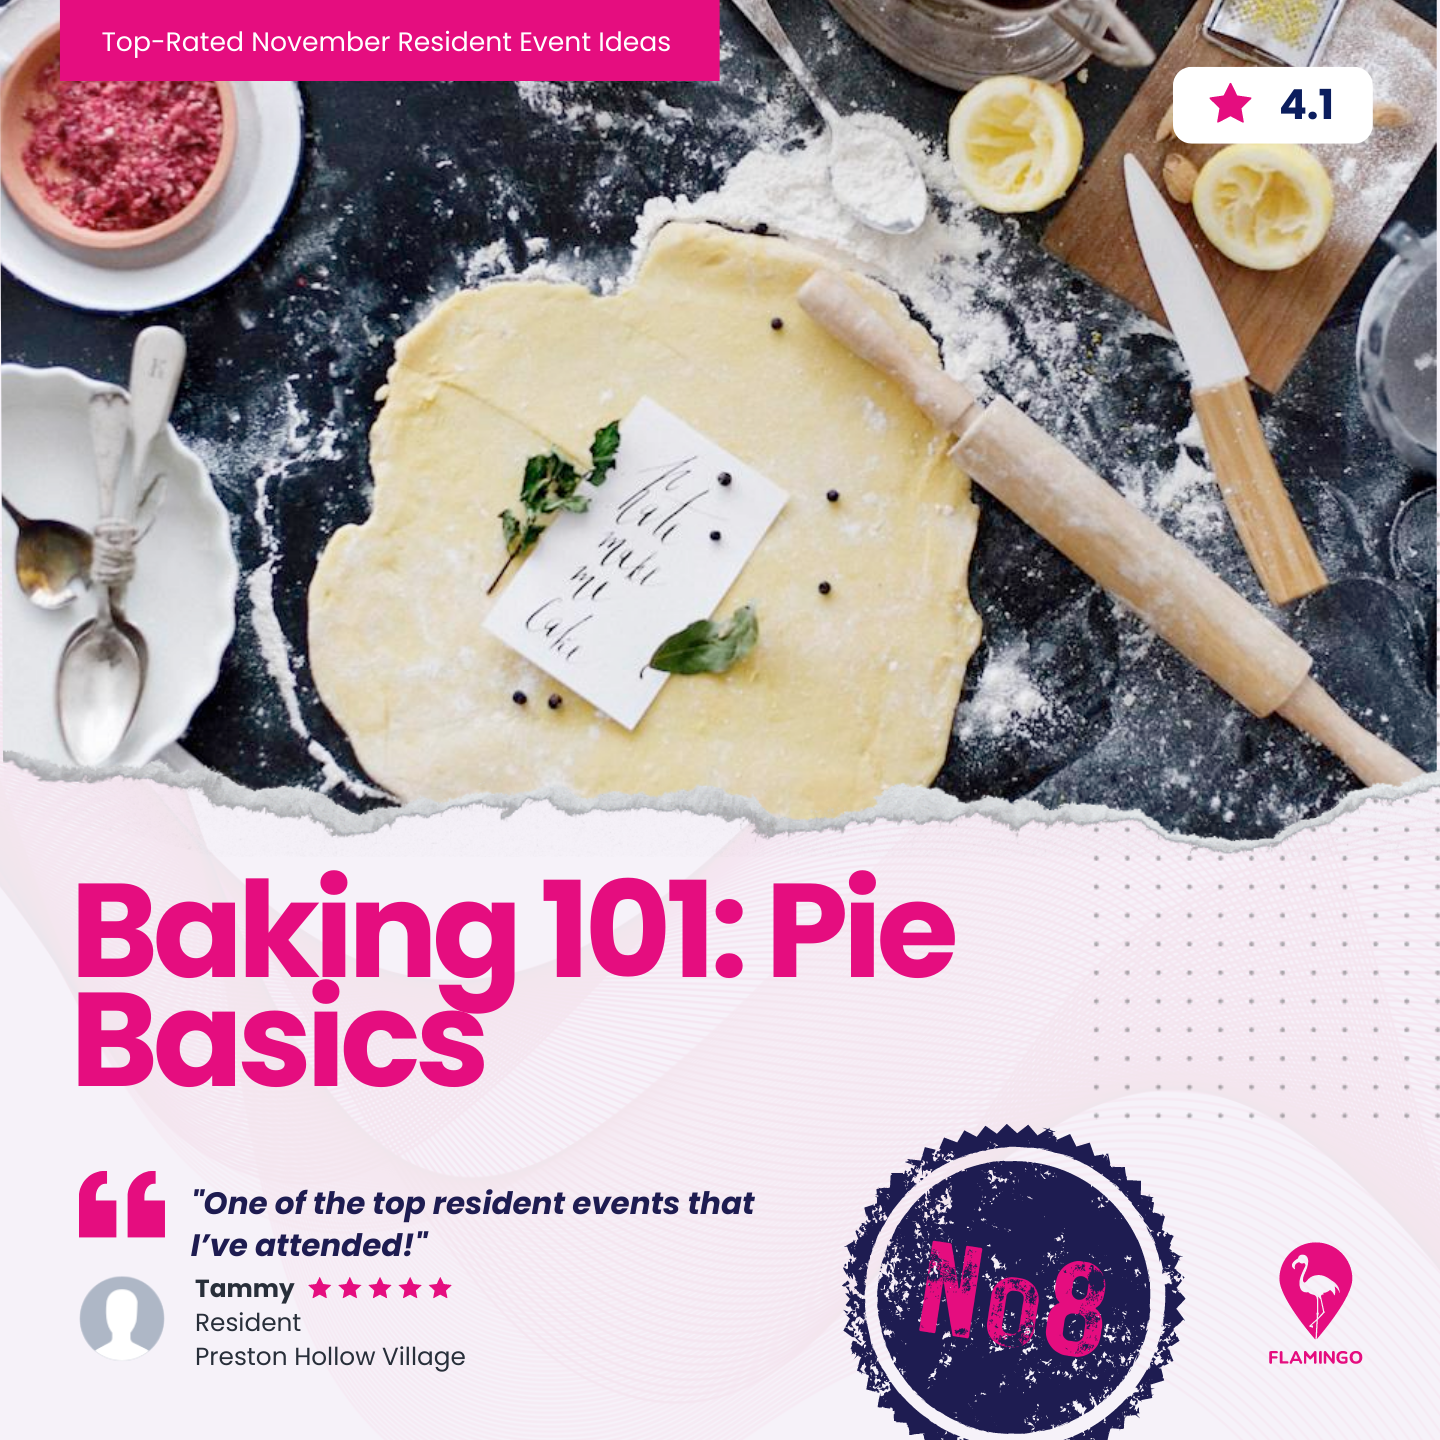 Baking 101: Pie Basics | November Resident Event Ideas